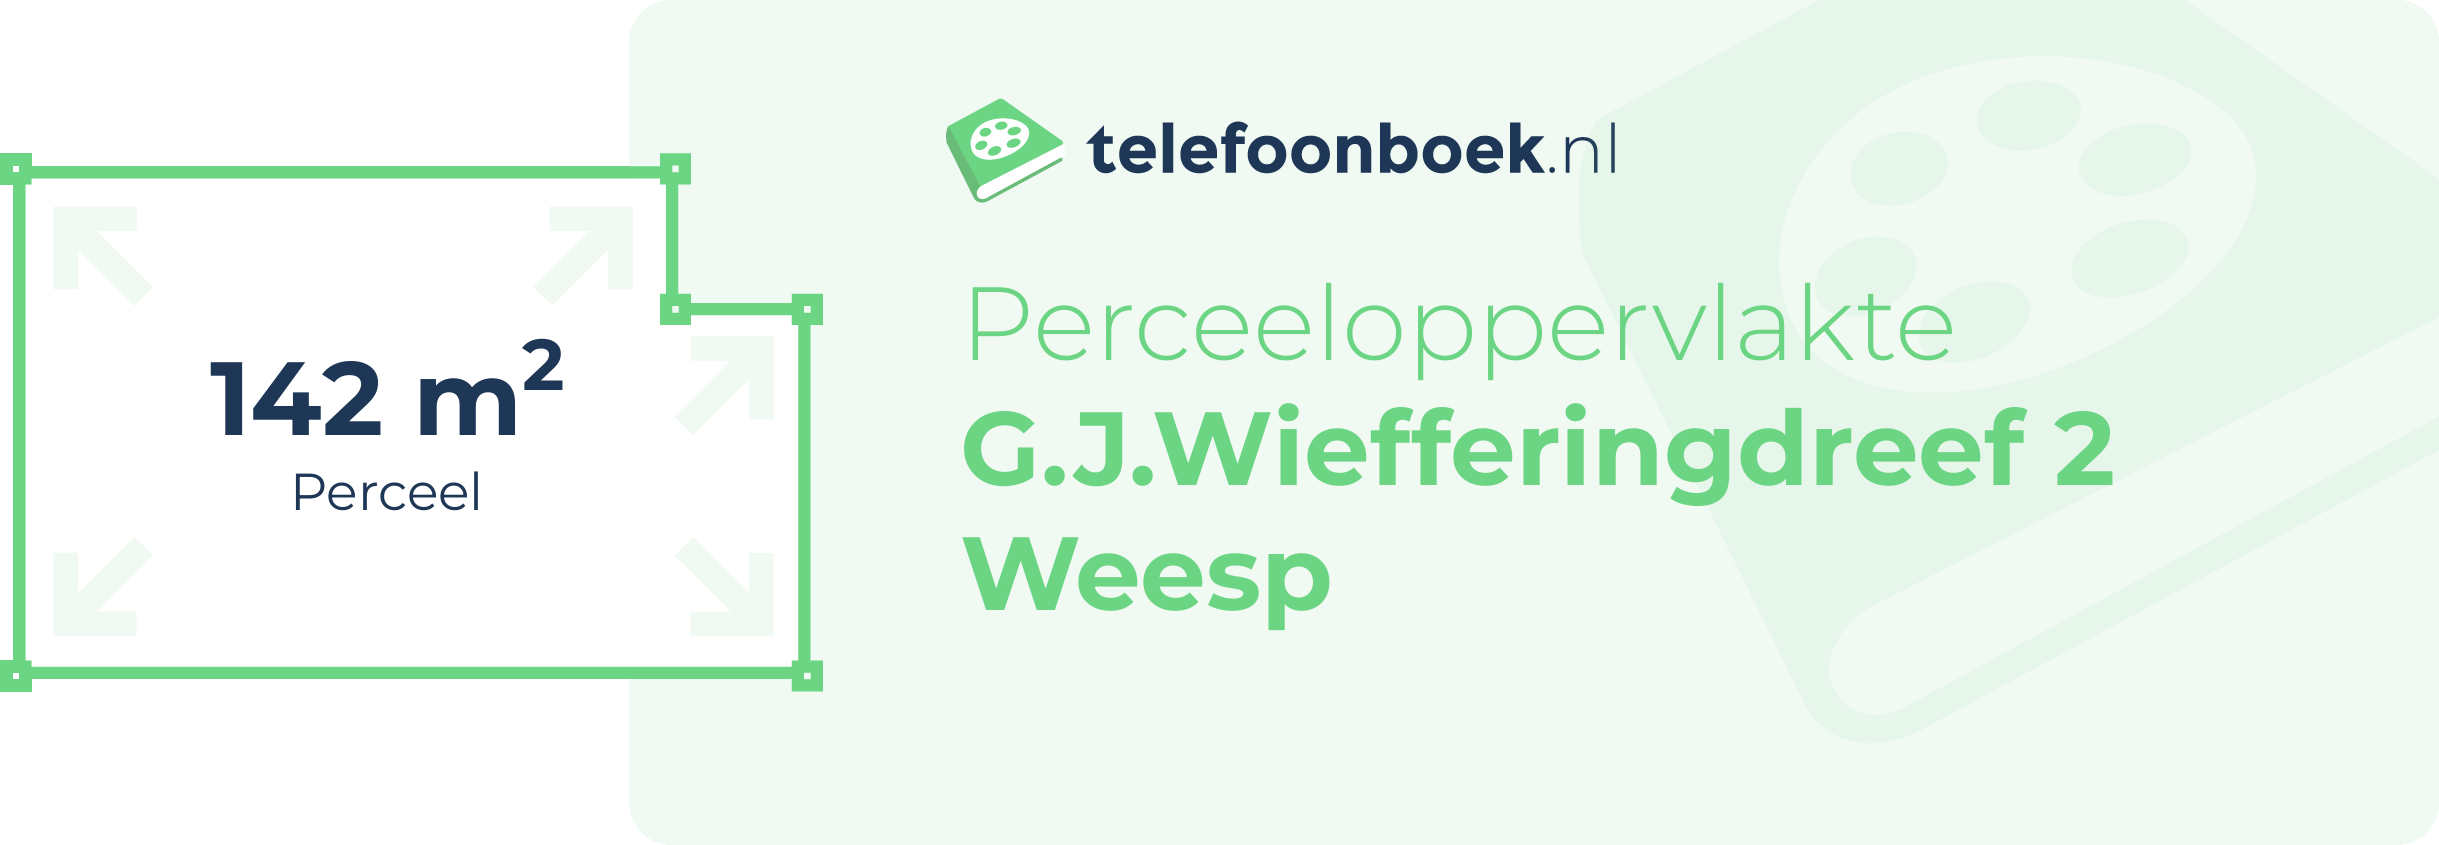 Perceeloppervlakte G.J.Wiefferingdreef 2 Weesp